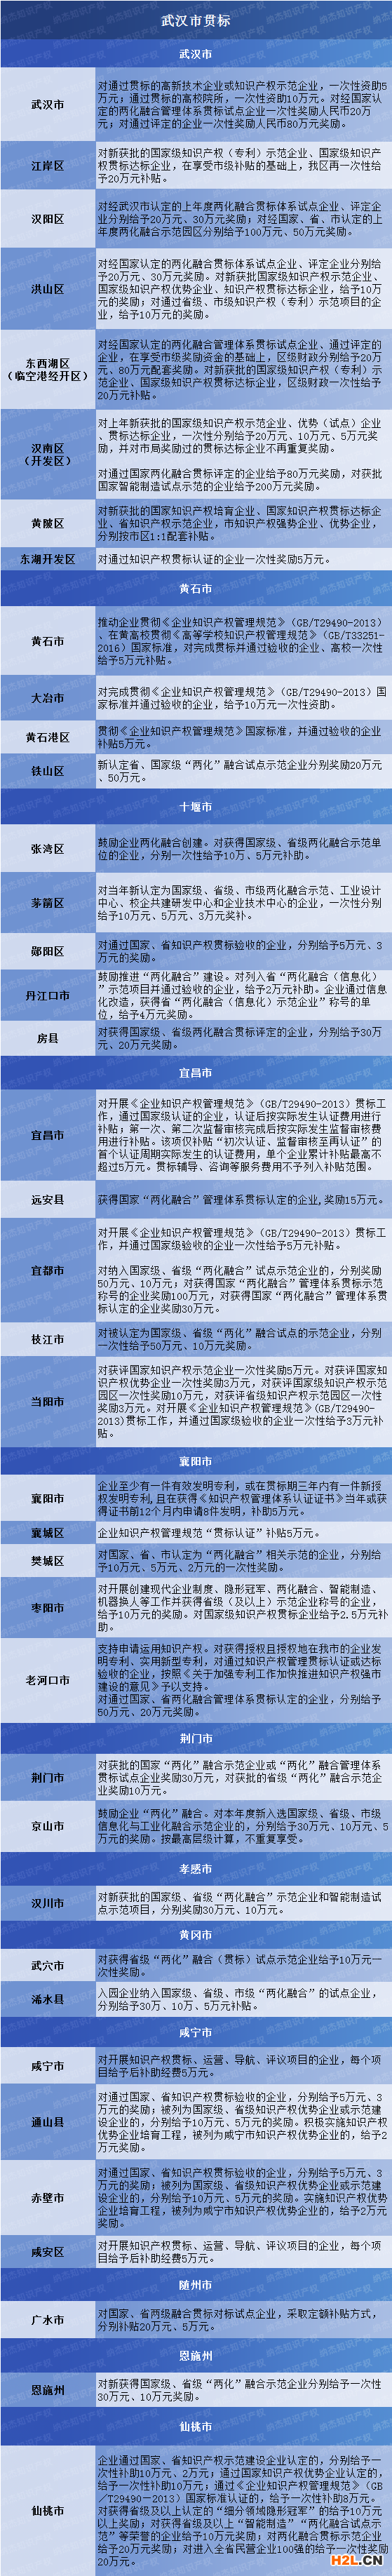 湖北省知识产权贯标/两化融合贯标奖励政策汇总，40个地区